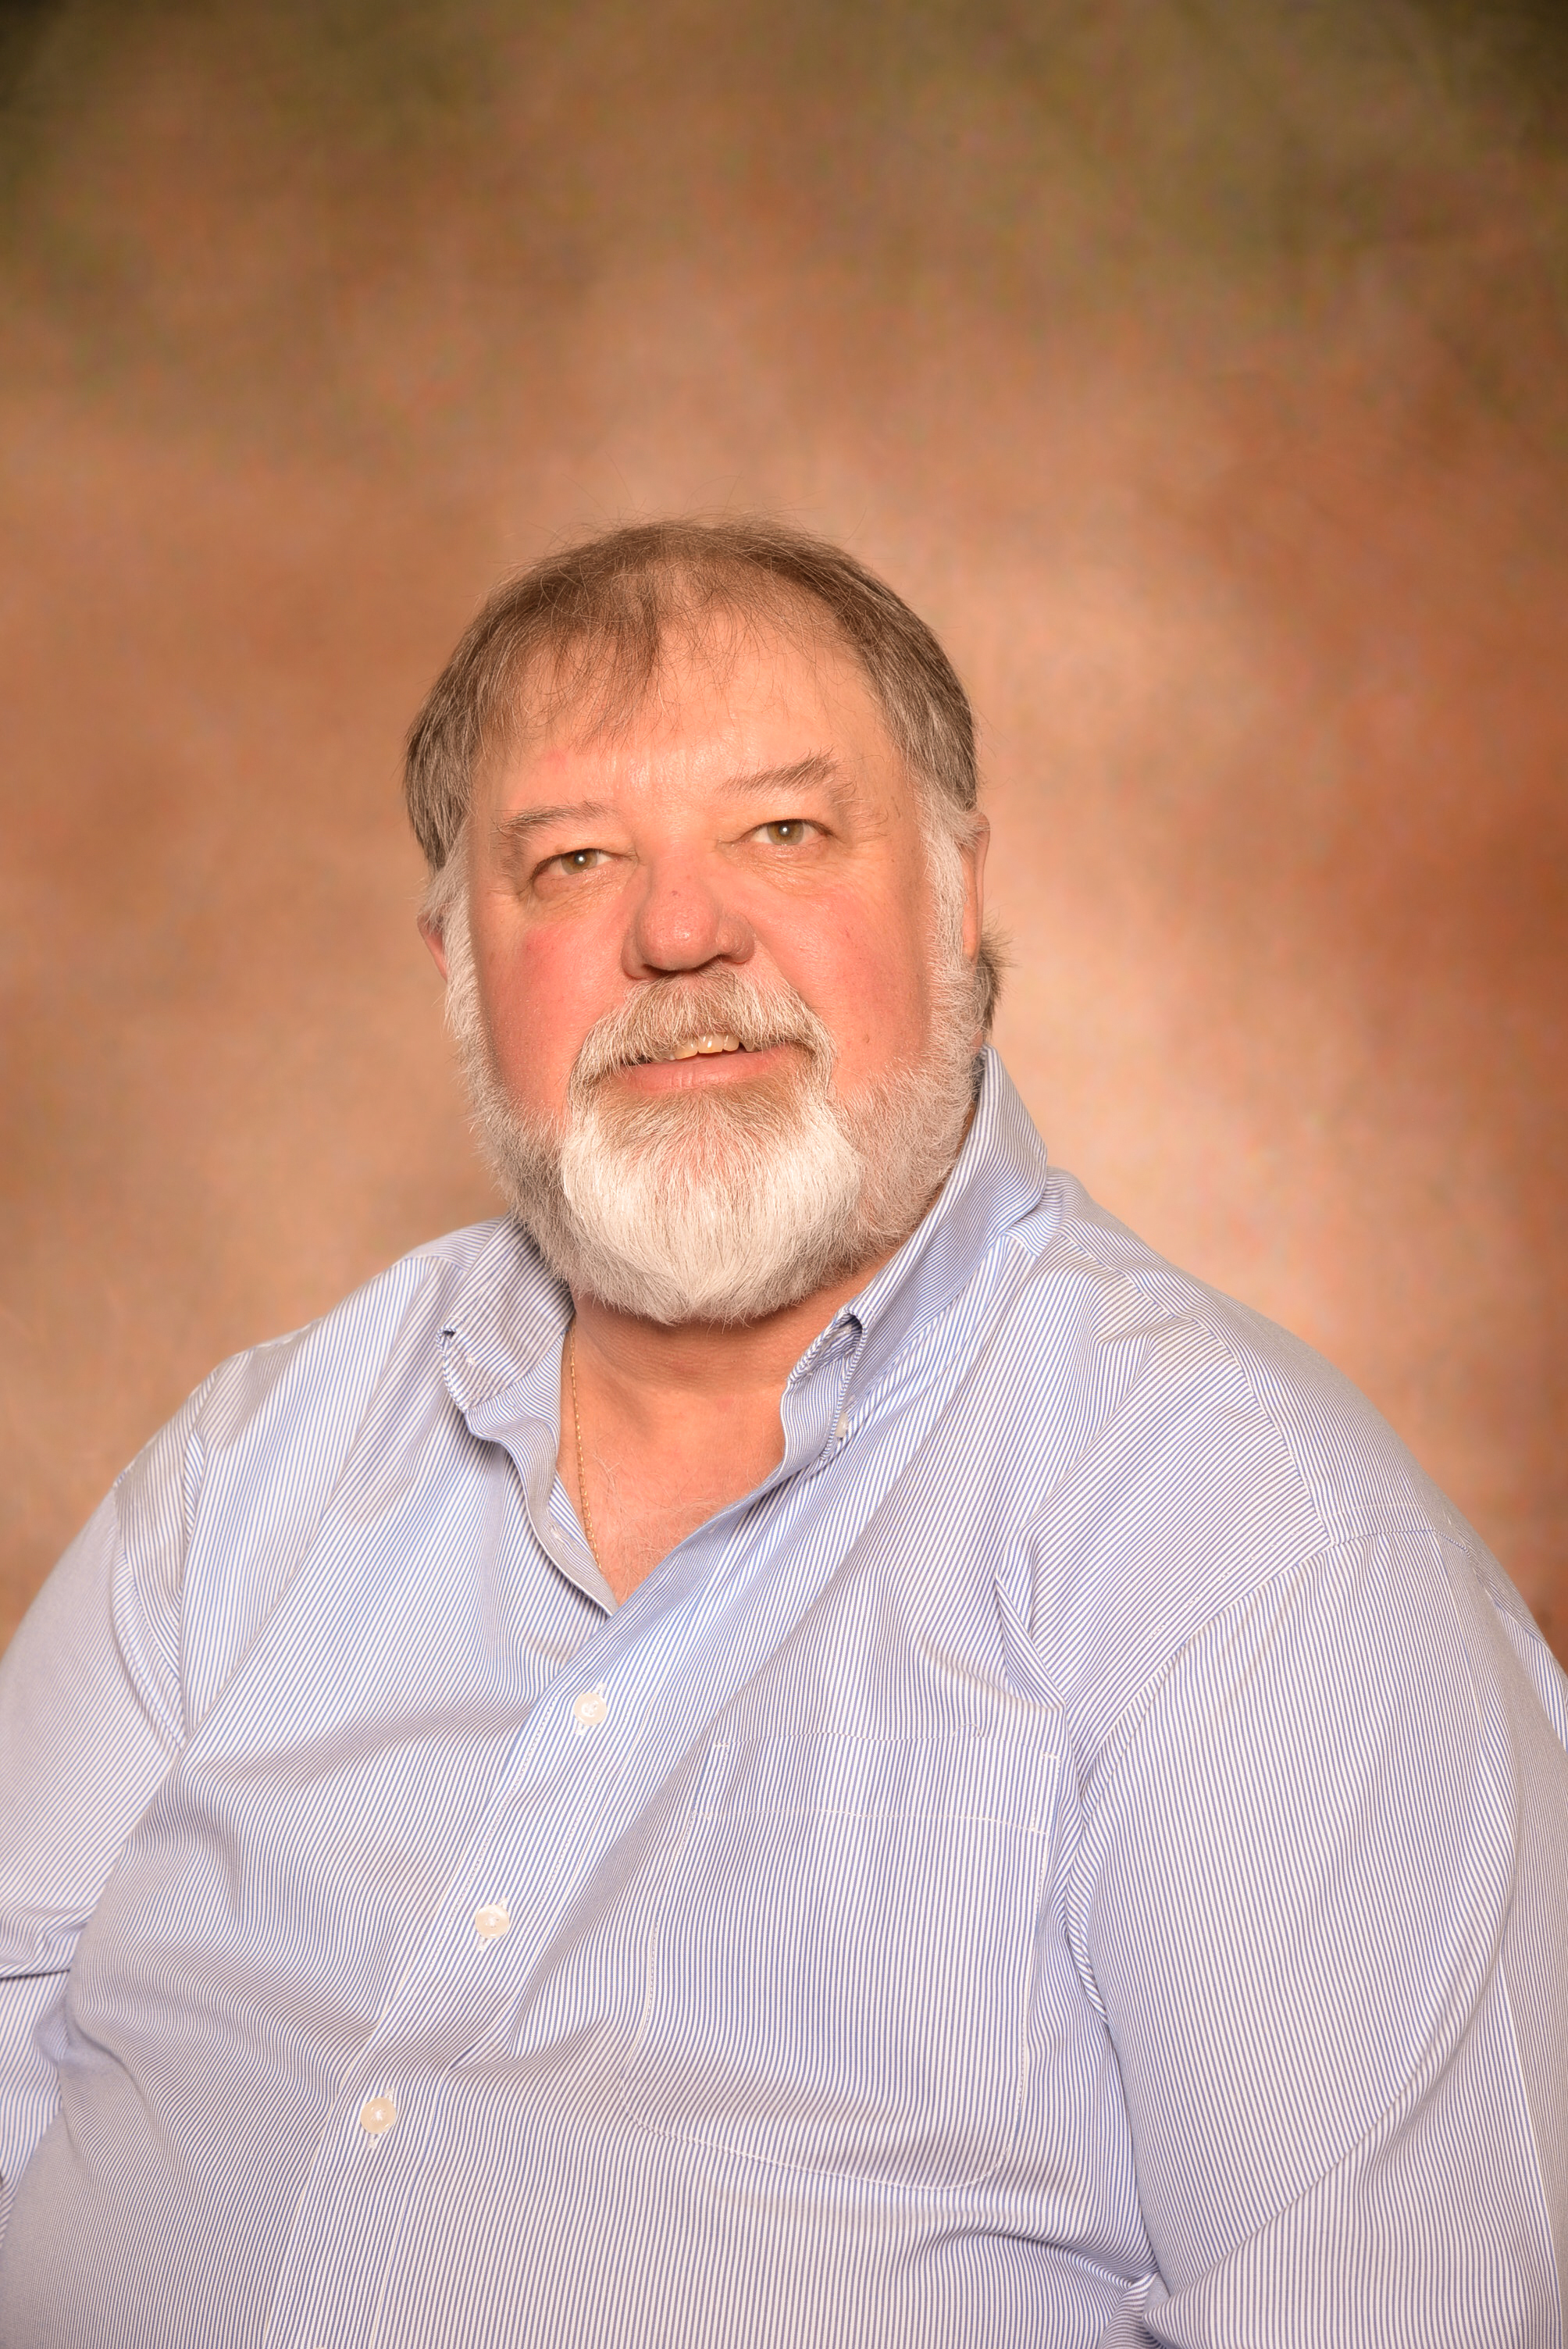 A man in a light blue button down shirt and a beard.